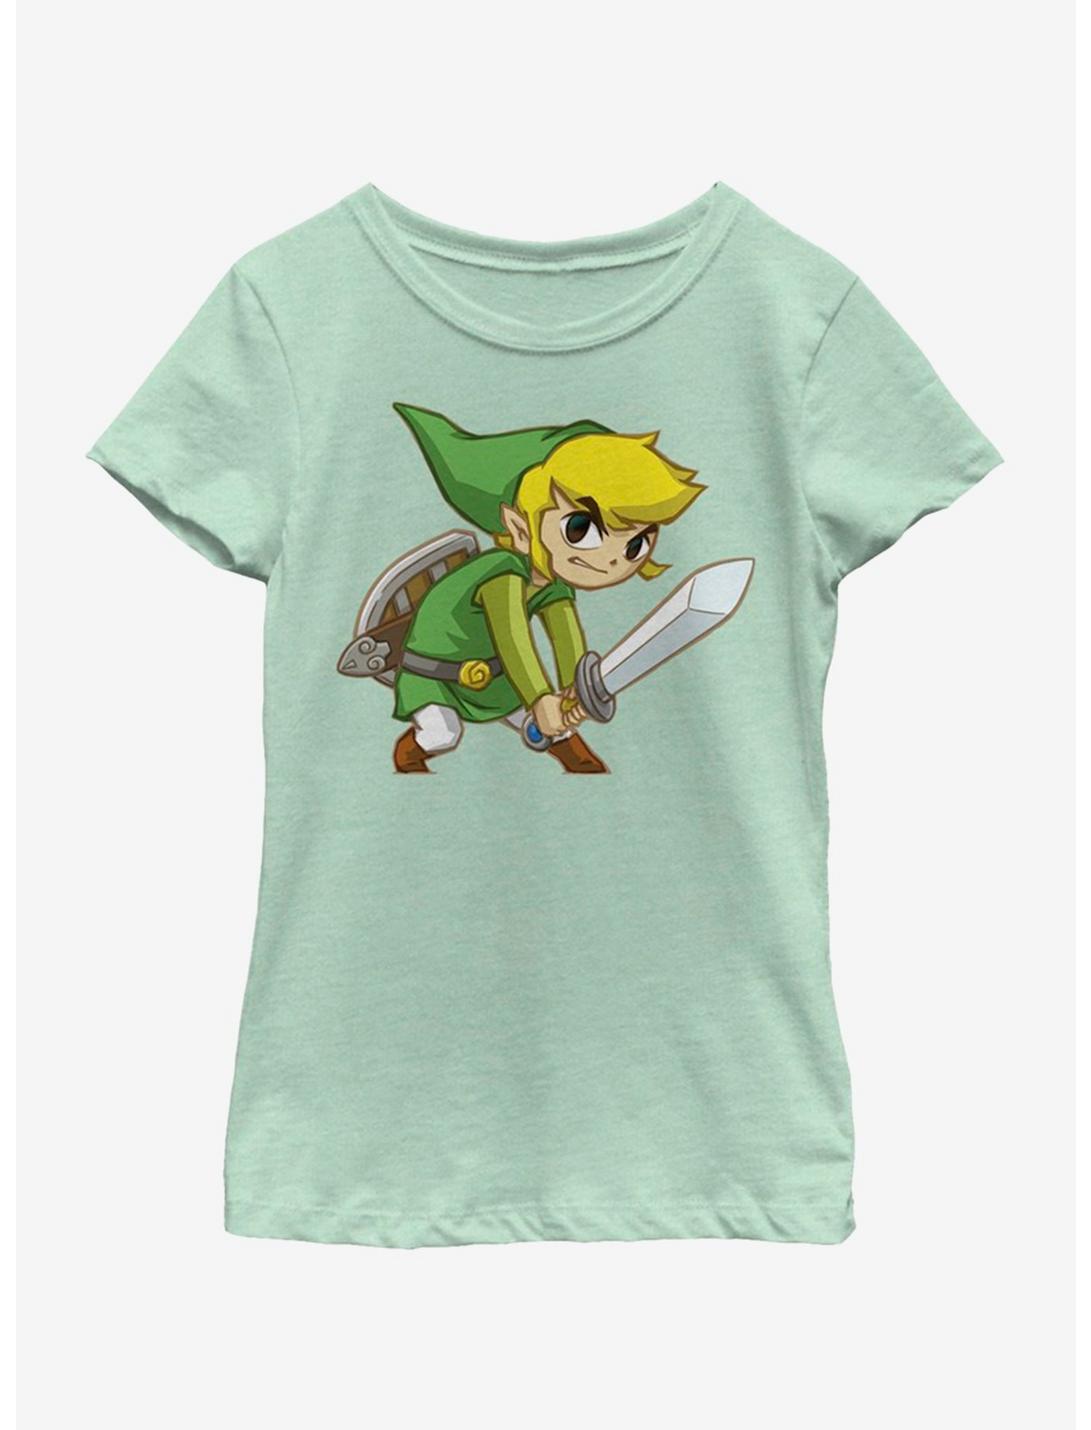 Nintendo Legend of Zelda Big Link Youth Girls T-Shirt, MINT, hi-res